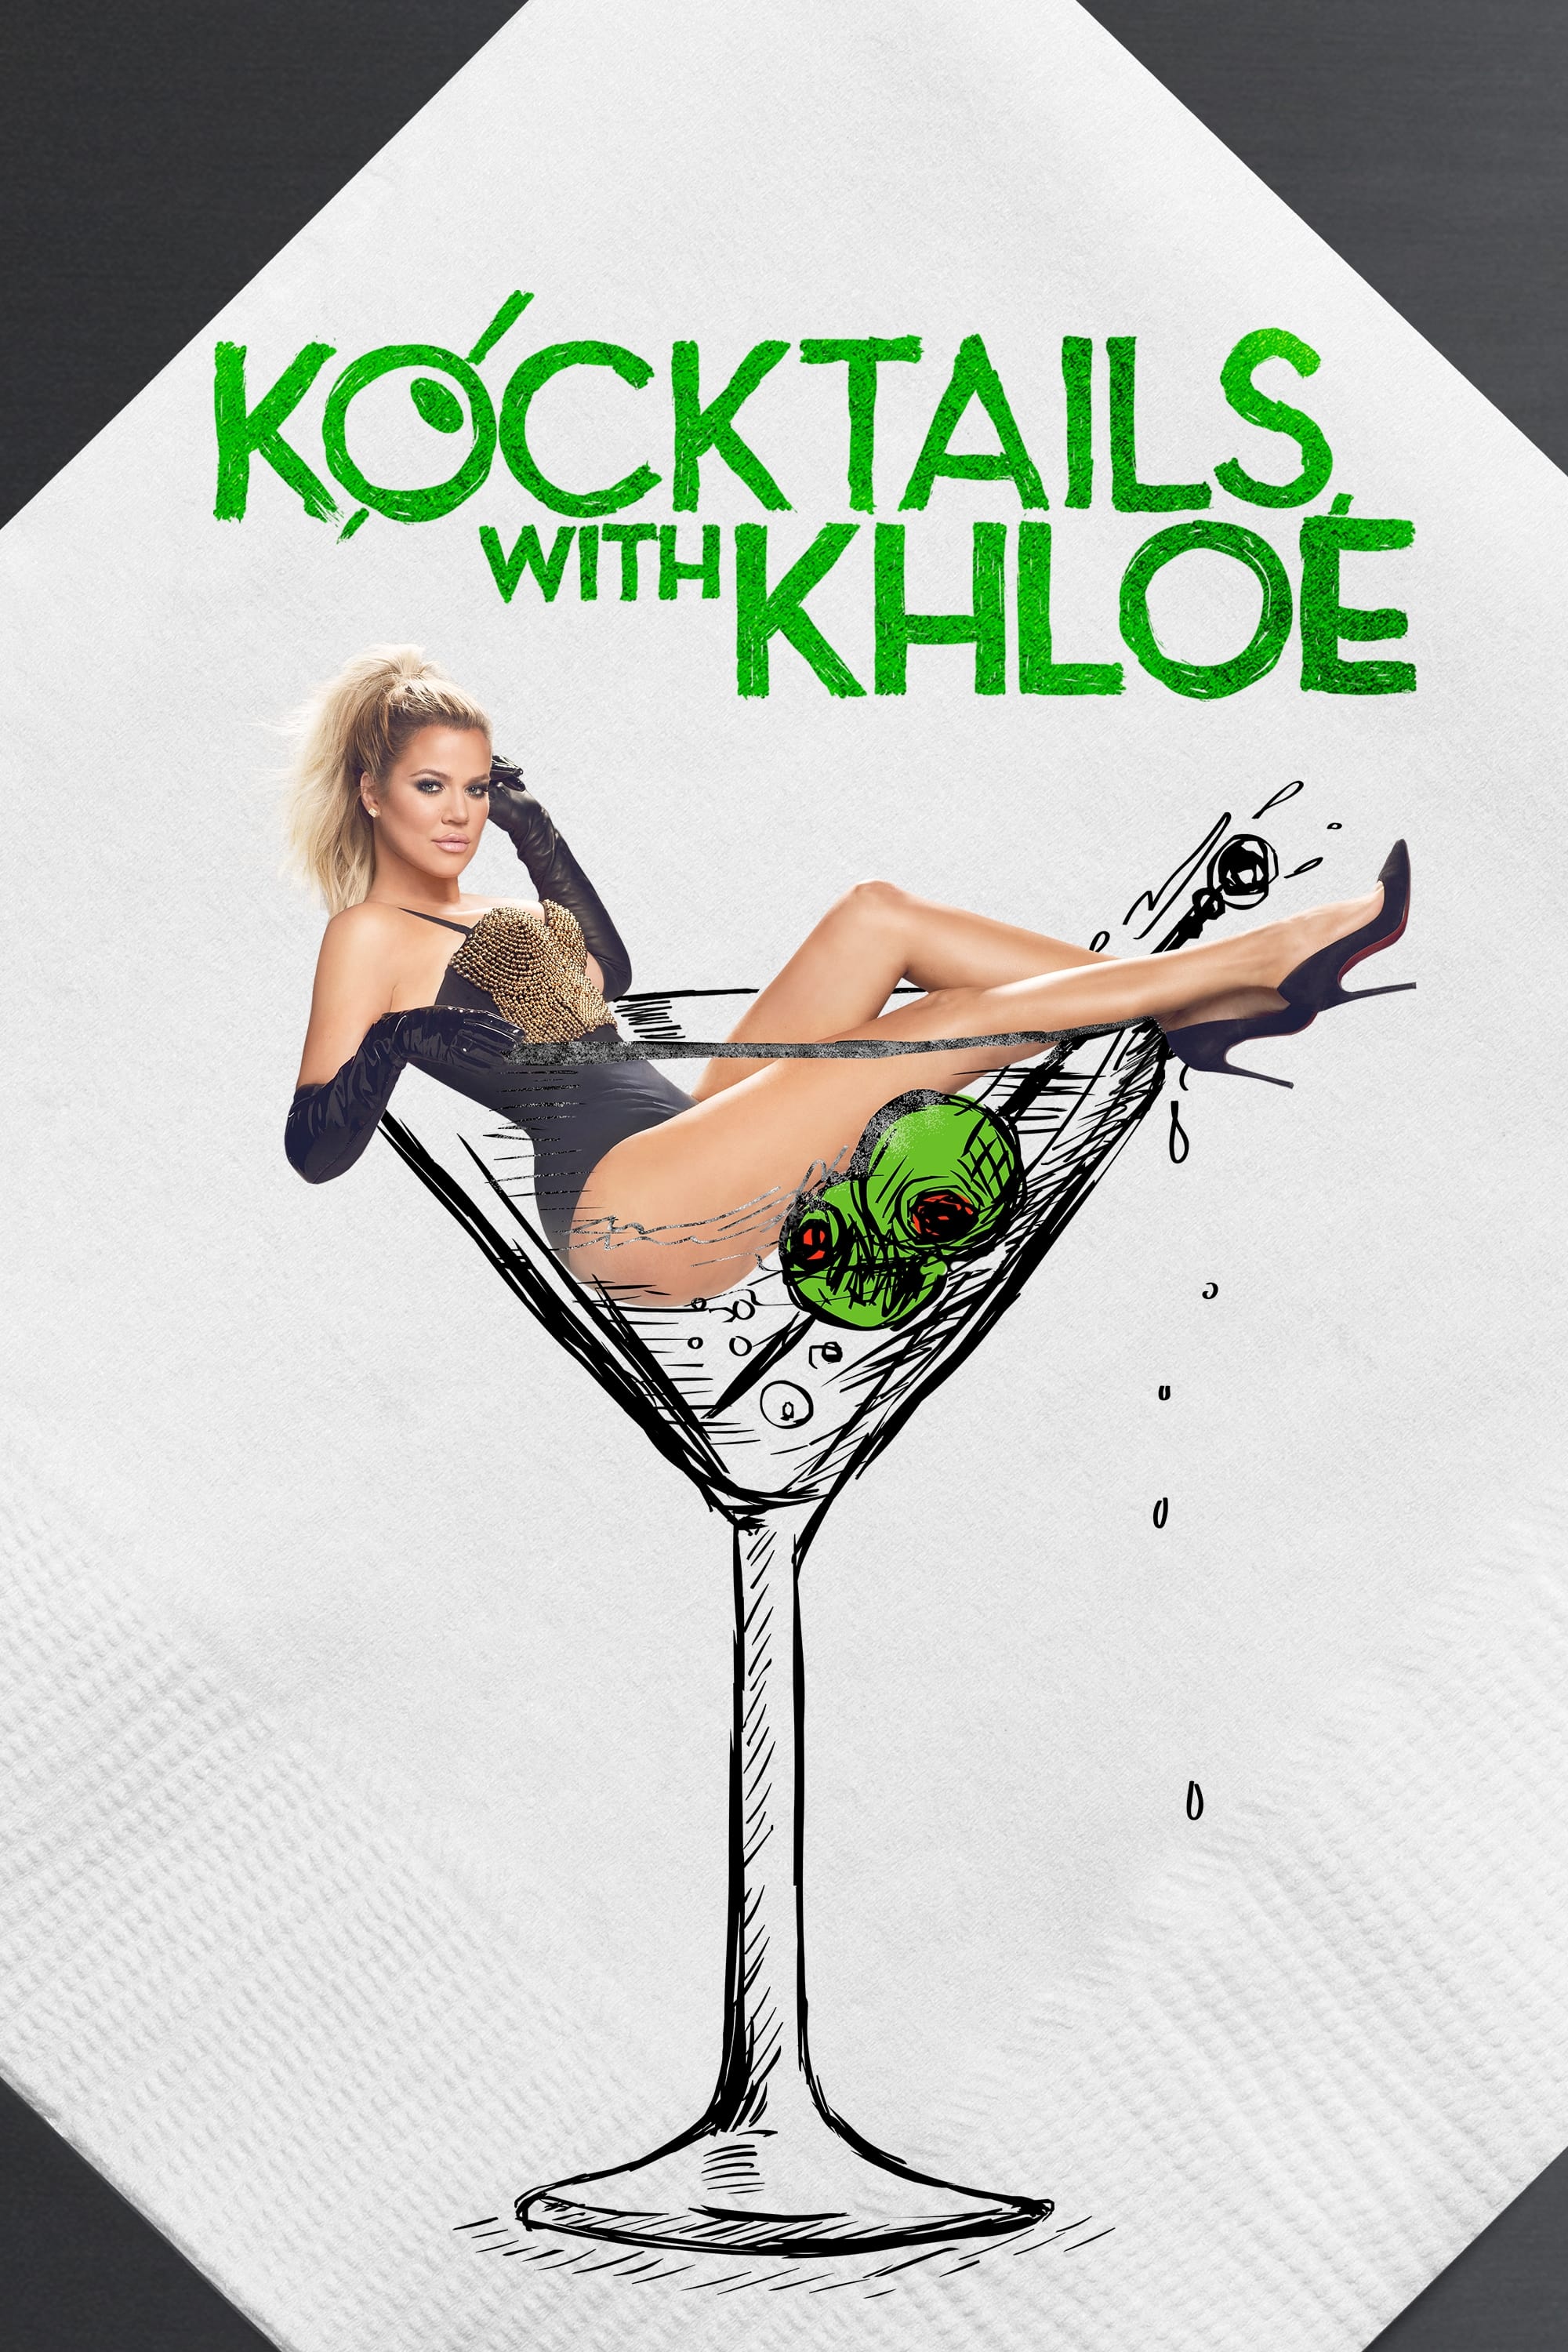 Kocktails With Khloé